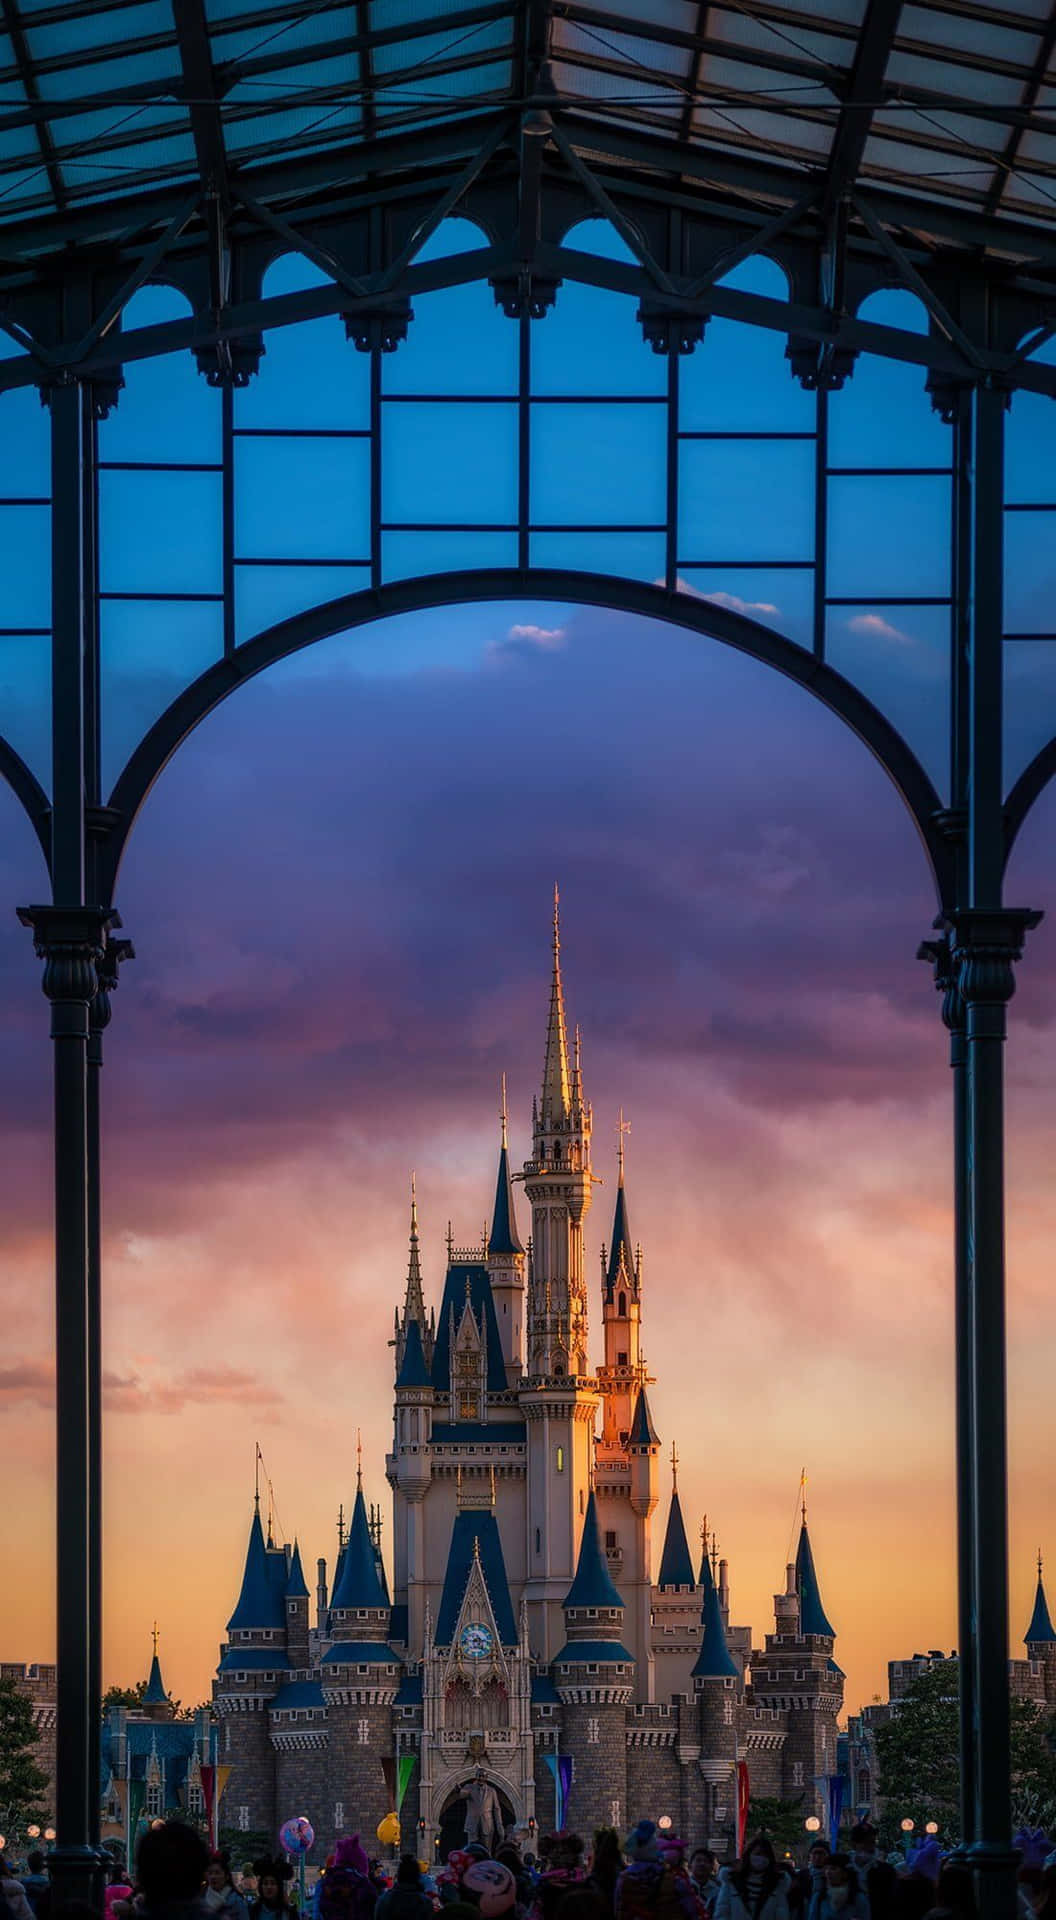 Billedeaf Det Ikoniske Disney-slot, Hjemsted For Magiske Eventyr.